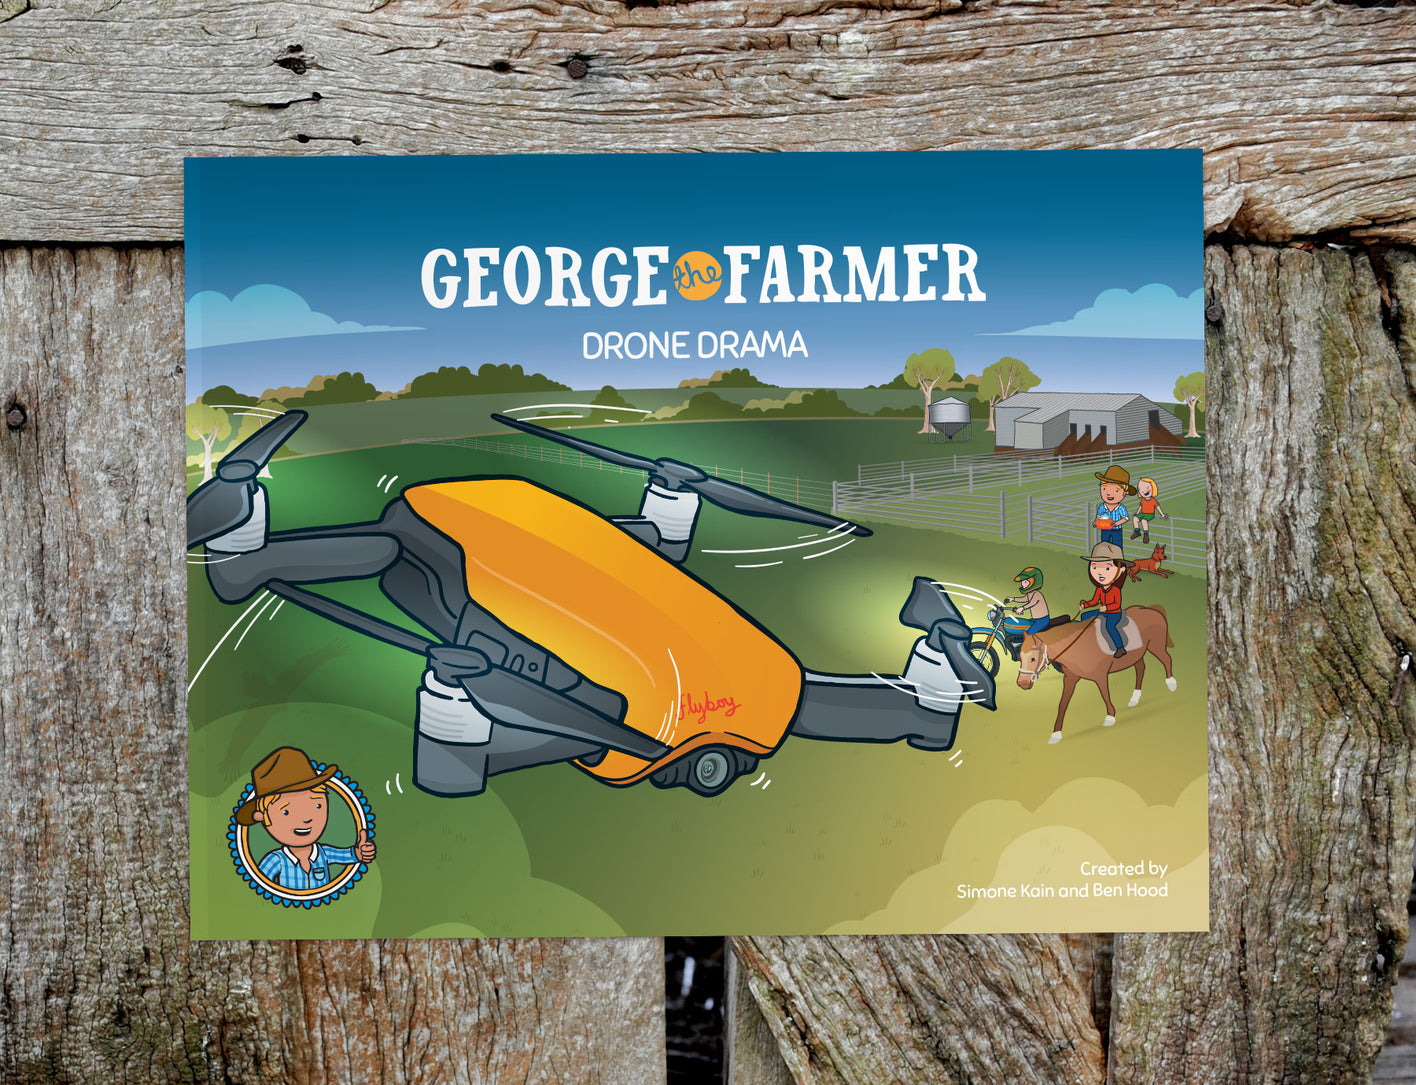 George the Farmer Drone Drama Picture Book